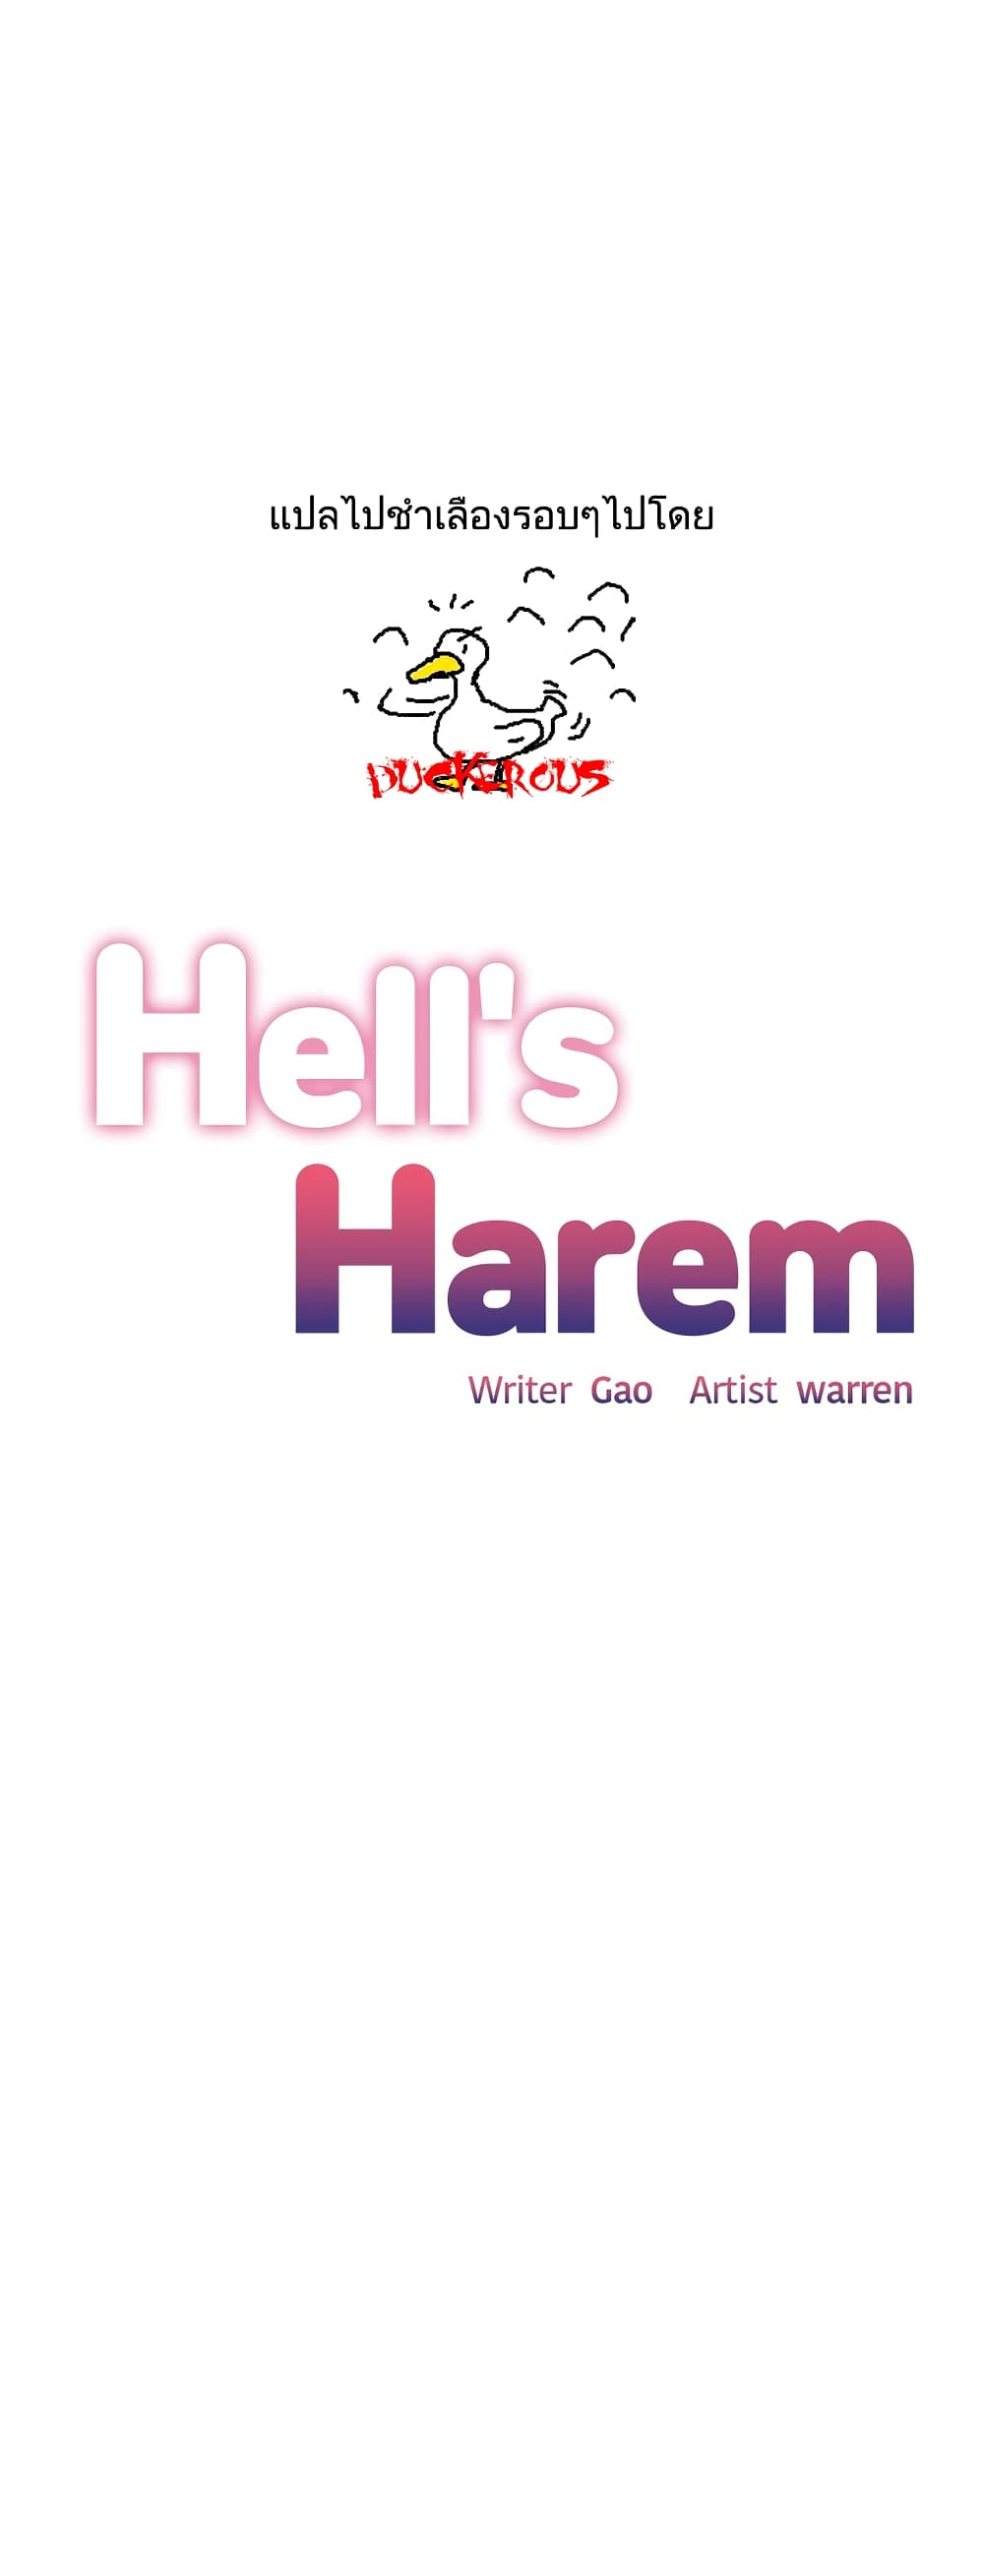 Hell's Harem 31 (1)